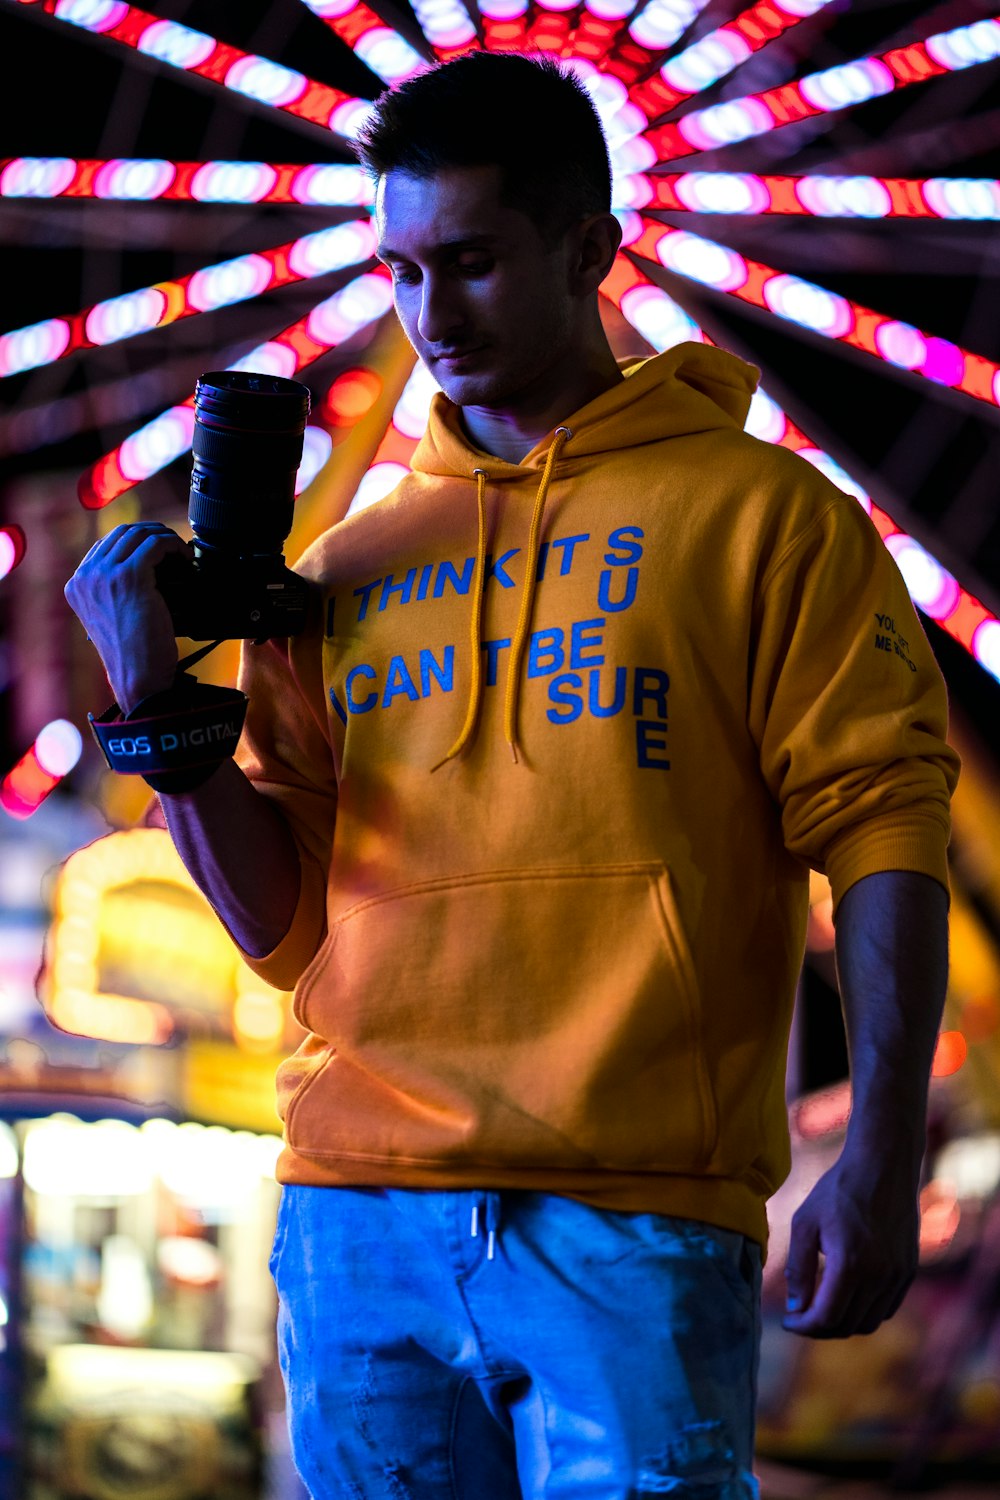 hombre con jersey amarillo sosteniendo una cámara DSLR negra